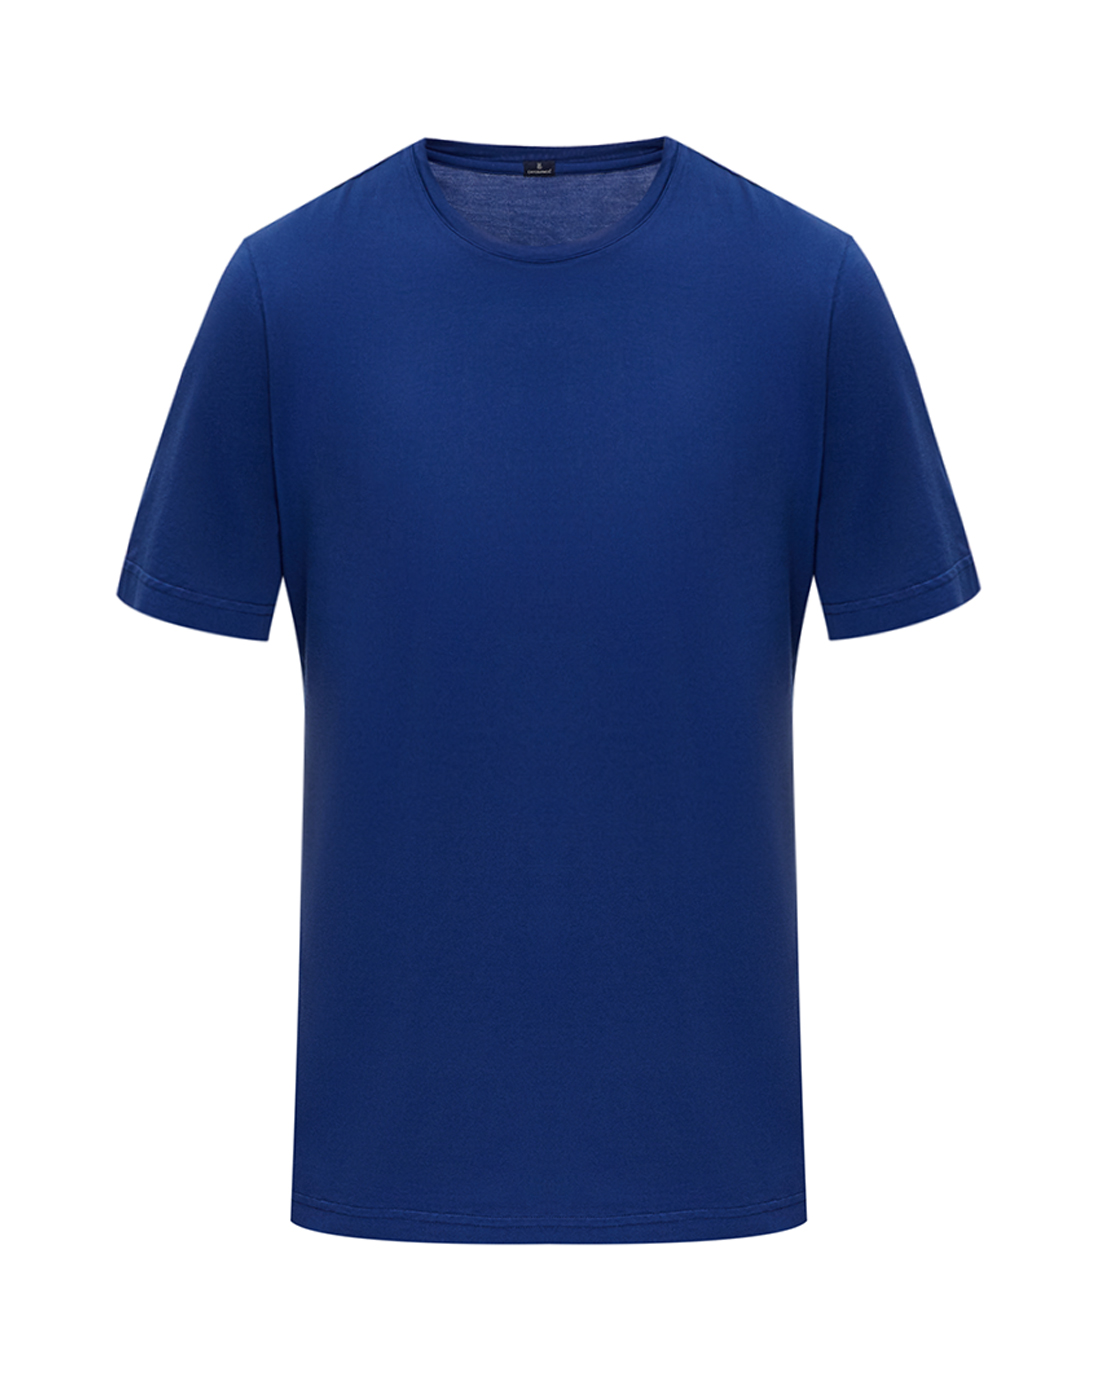 Мужская синяя футболка  Capobianco S12M660.AL01.MARINE-1